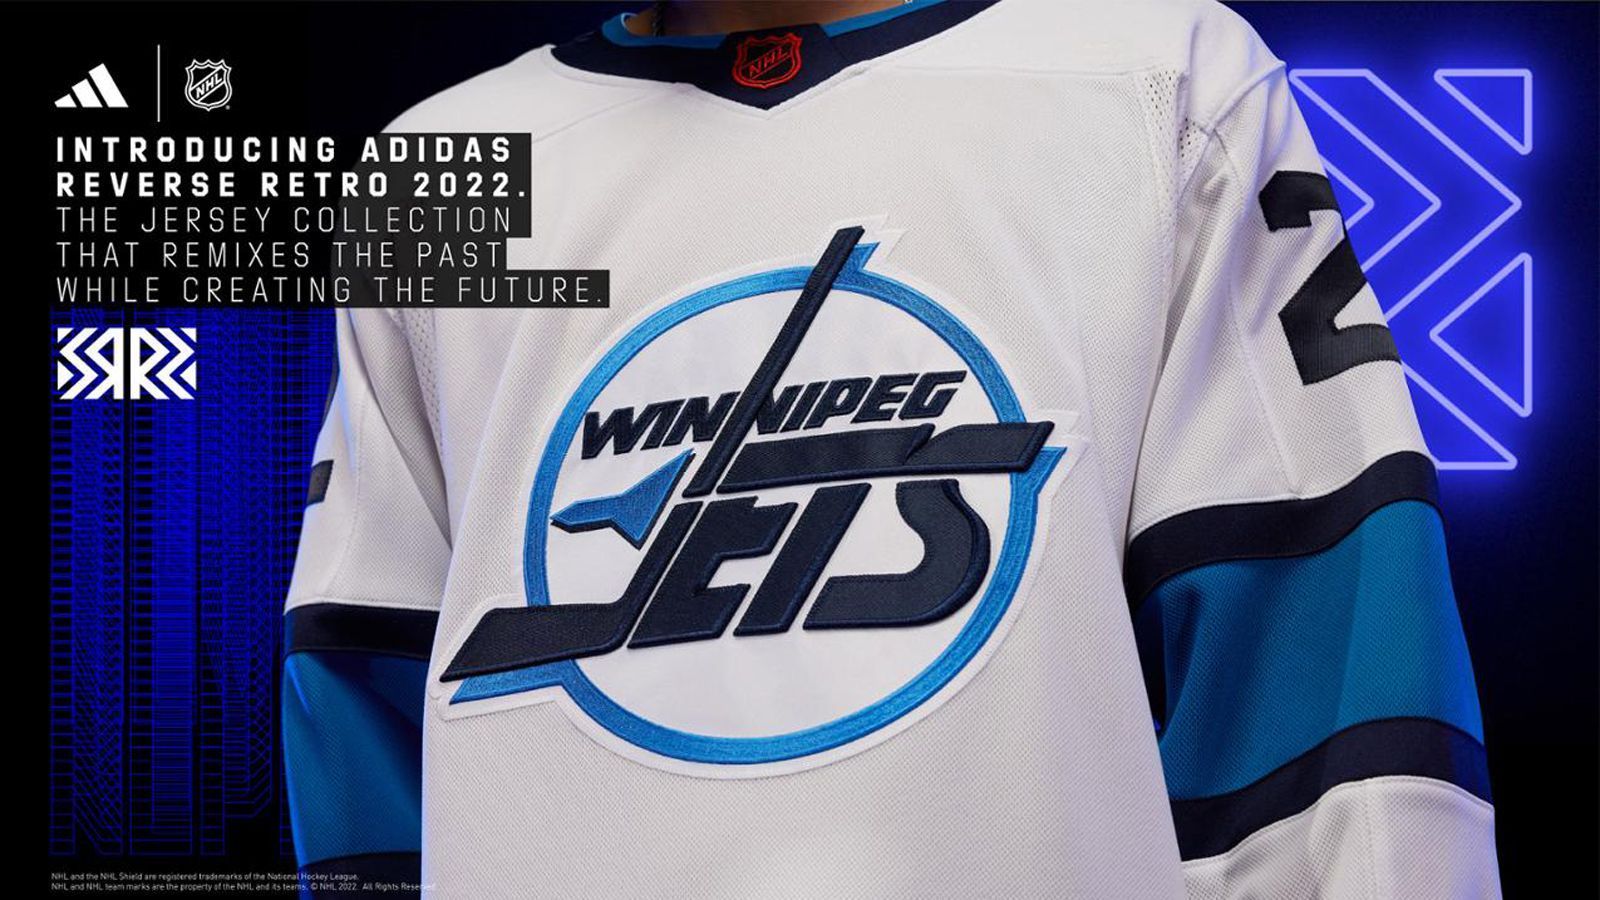 
                <strong>Winnipeg Jets</strong><br>
                Die Jets verzichten in ihrem neuen Trikot auf Rot und setzen stattdessen auf Königsblau und eine strahlend weiße Grundfarbe. Das Design des Reverse-Retro-Trikots von 2022 wurde vom Trikot aus dem Jahr 1990 inspiriert, dem Eröffnungsjahr des Trikots, das Teemu Selanne trug, als er 1992/93 den Rookie-Torrekord aufstellte.
              